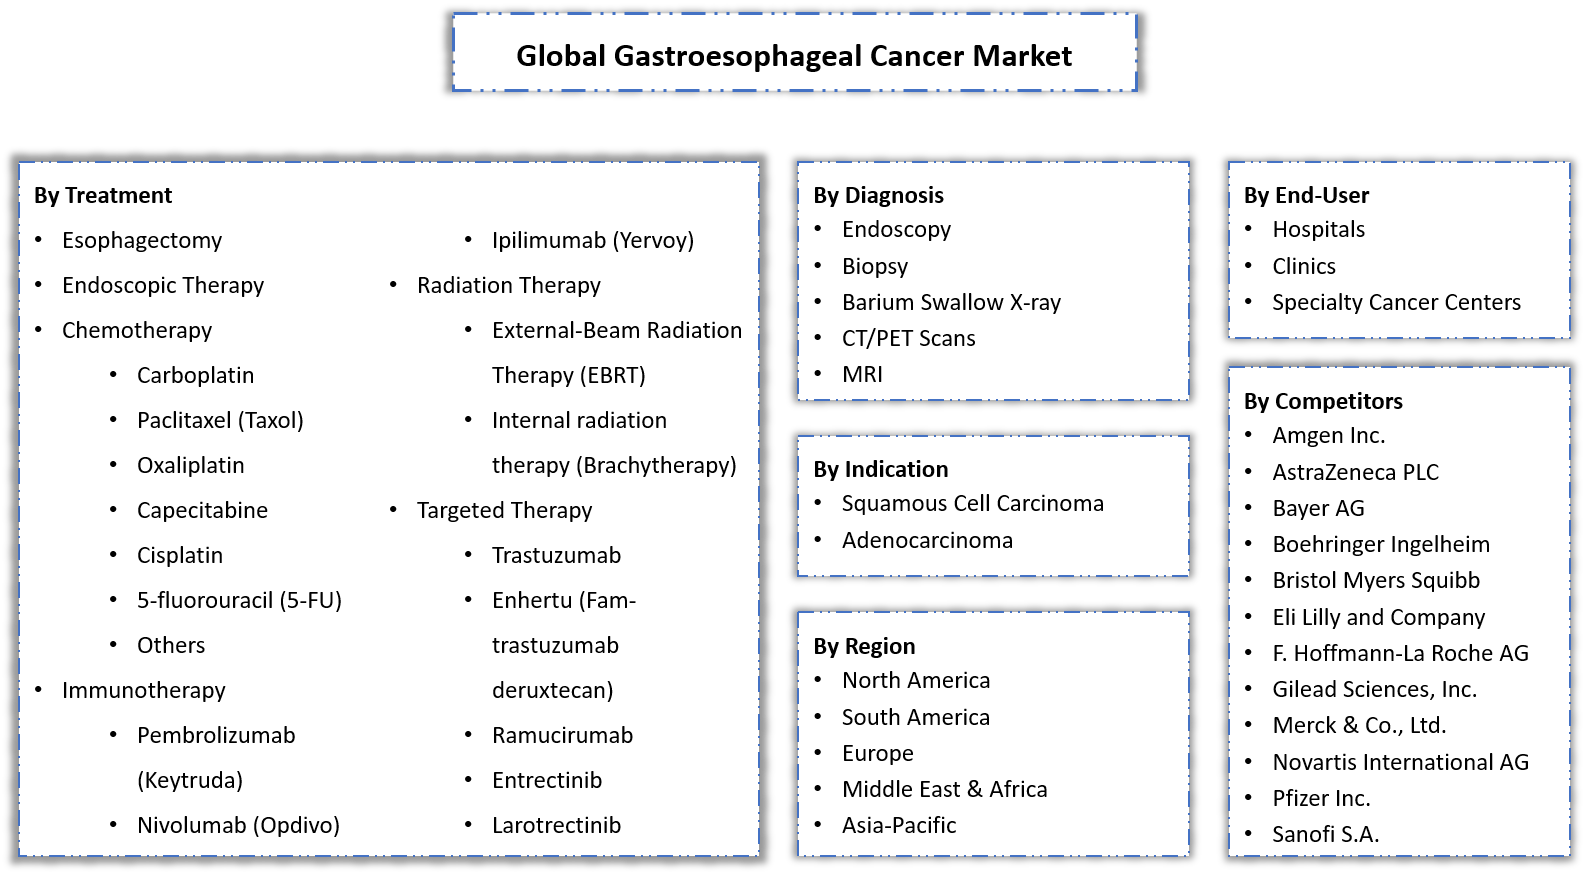 Gastroesophageal Cancer Market Segmentation